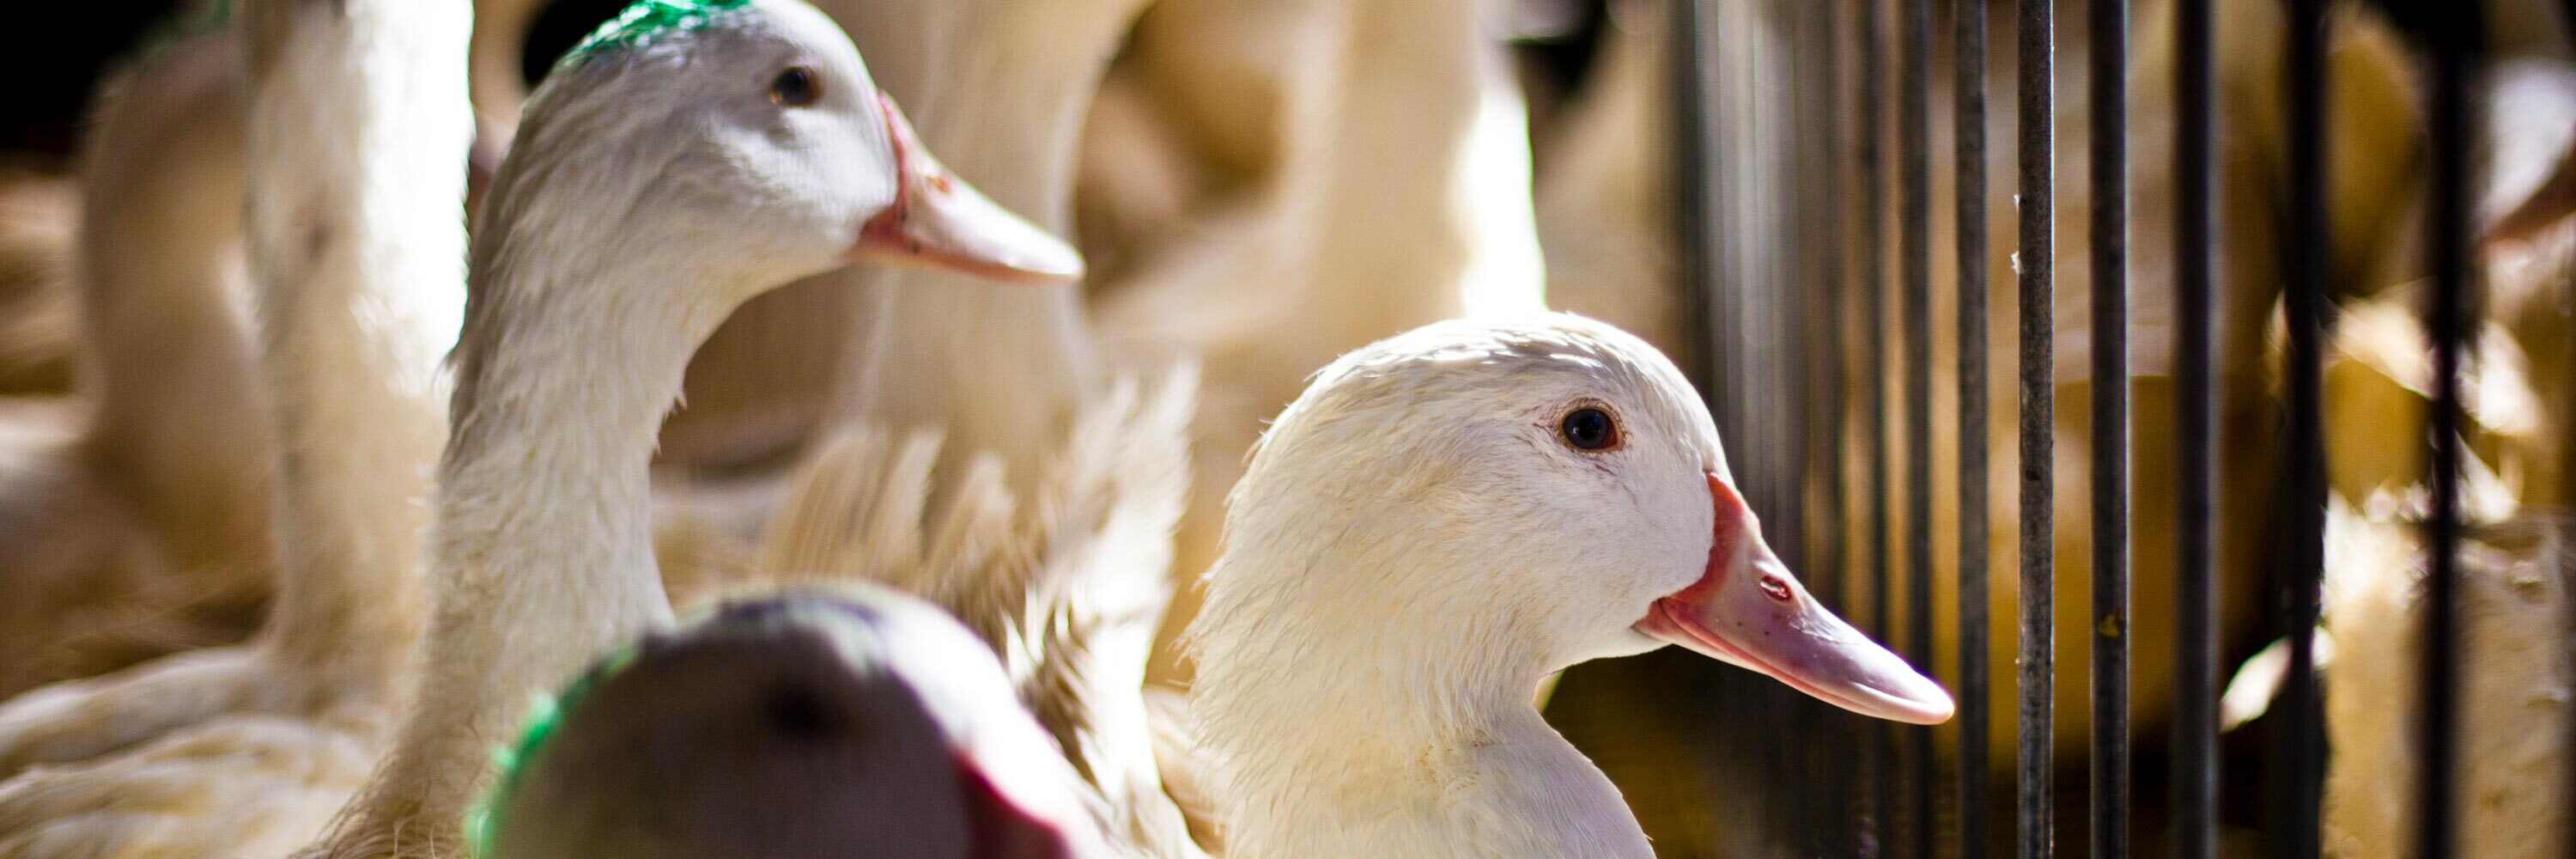 Patos en una granja de producción de foie gras